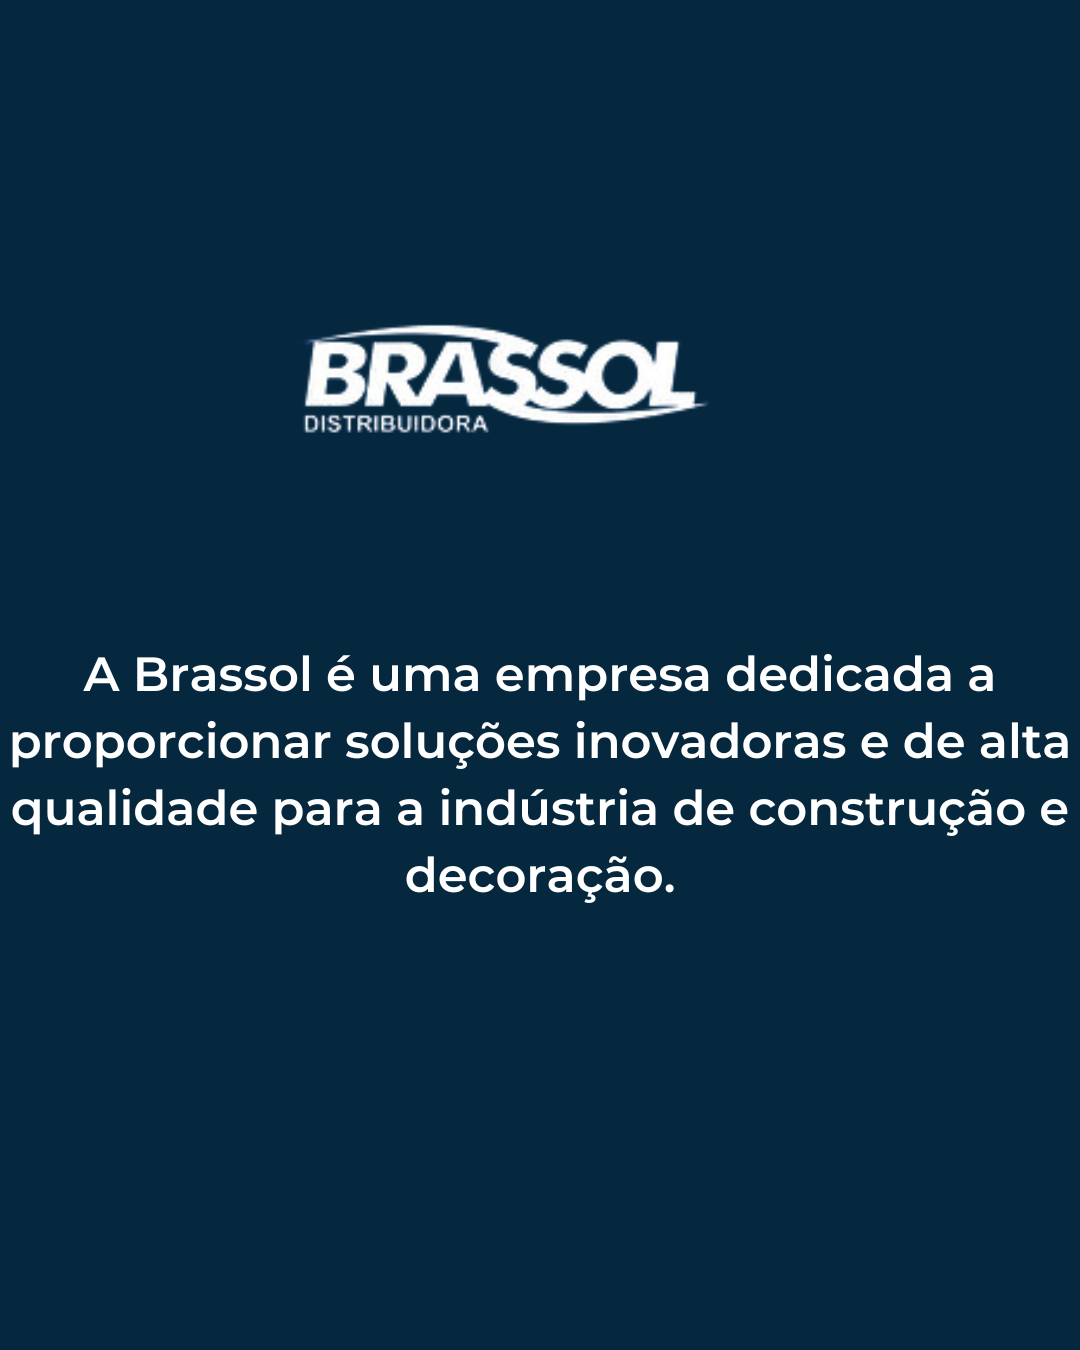 Brassol